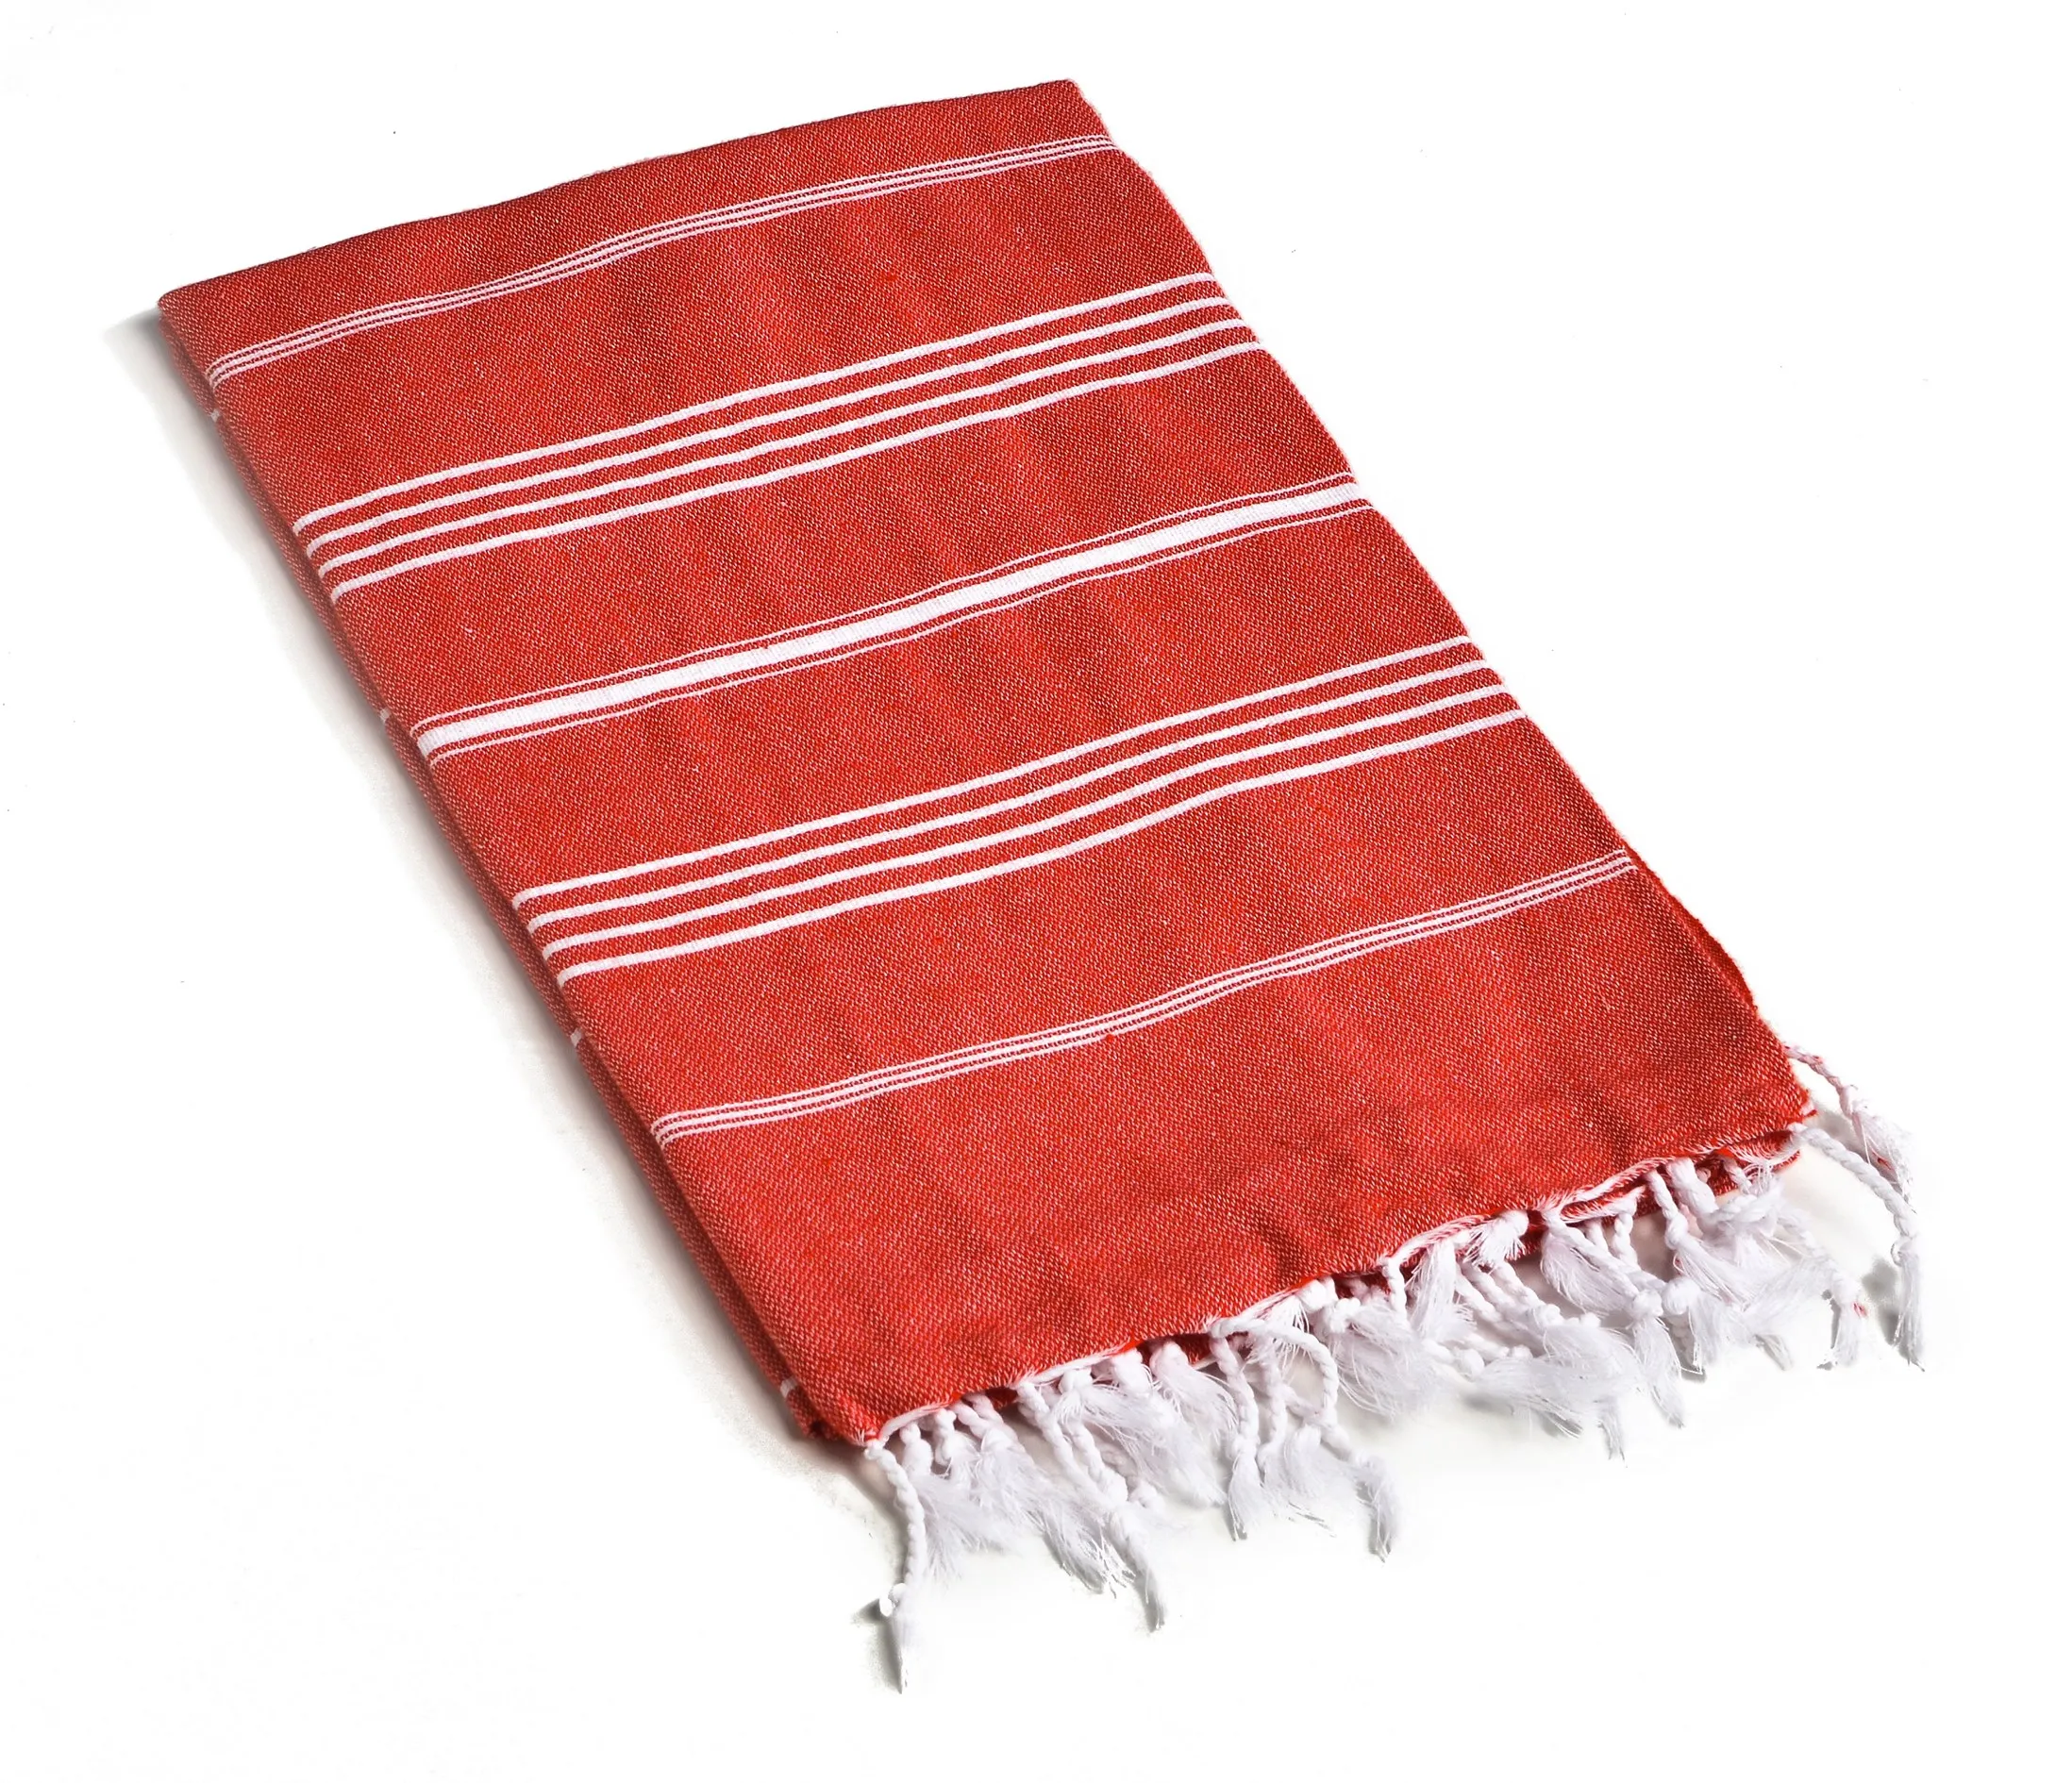 Разноцветное качественное полотенце и Peshtemal стильное махровое полотенце, Сделано в Турции, подходит для использования в турецком стиле